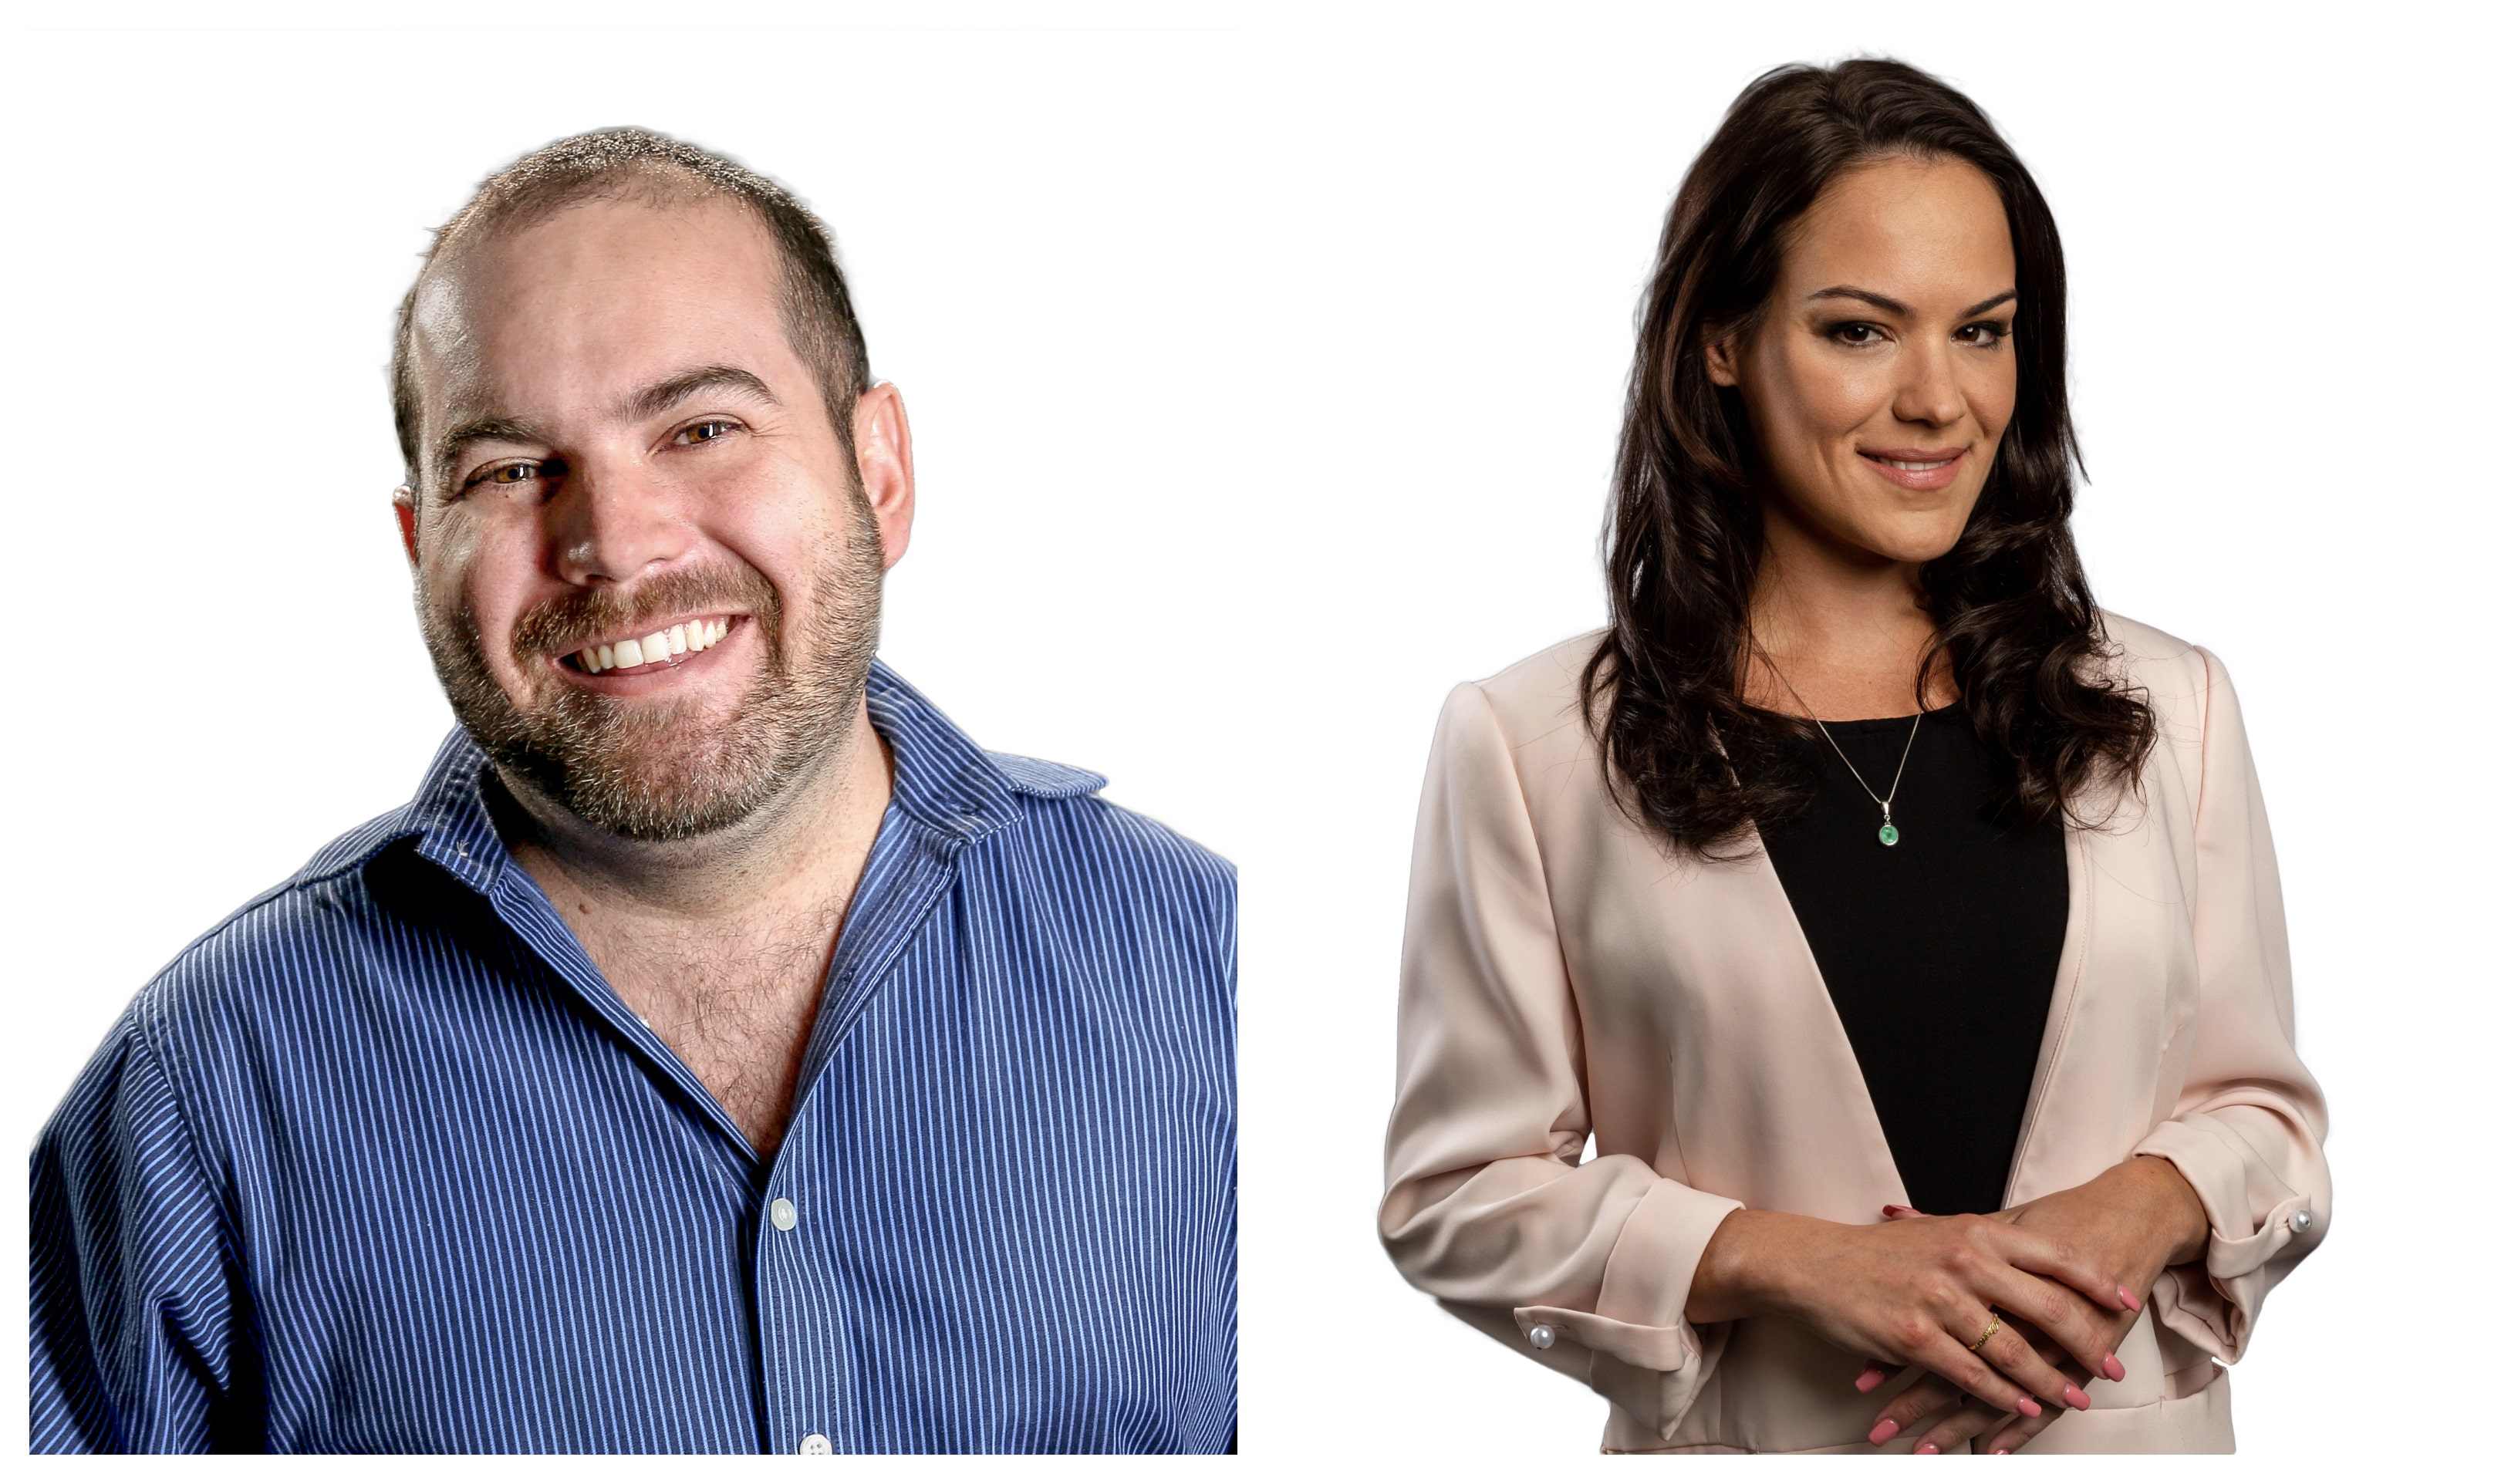 Exclusive: HempMeds Names Caroline Heinz And Raul Elizalde As Co-CEOs